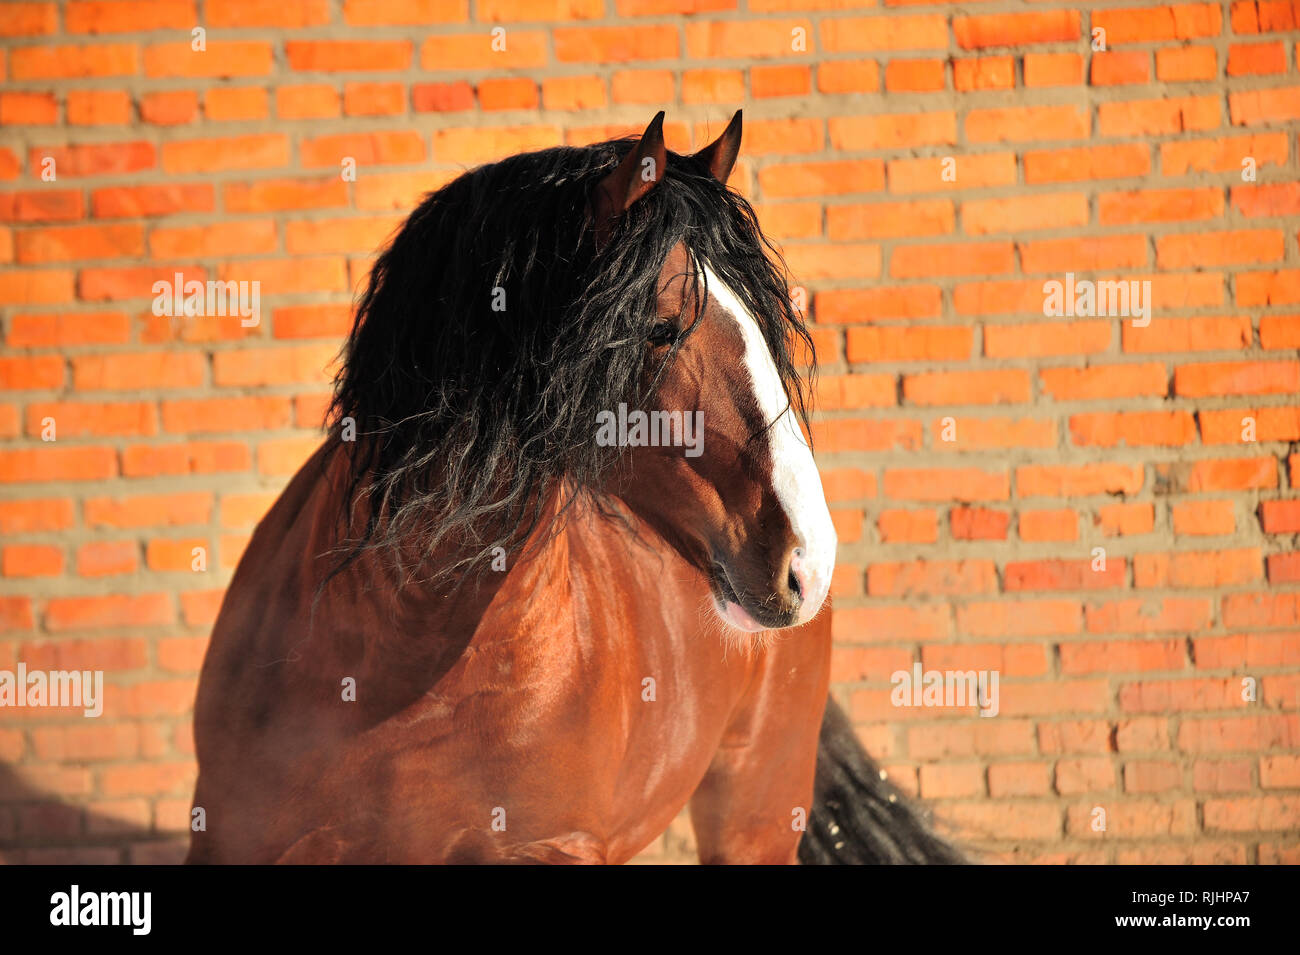 Bay progetto di cavallo con la criniera nera e il naso bianco al fianco di rosso la parete in mattoni. Orizzontale, lateralmente, ritratto. Foto Stock